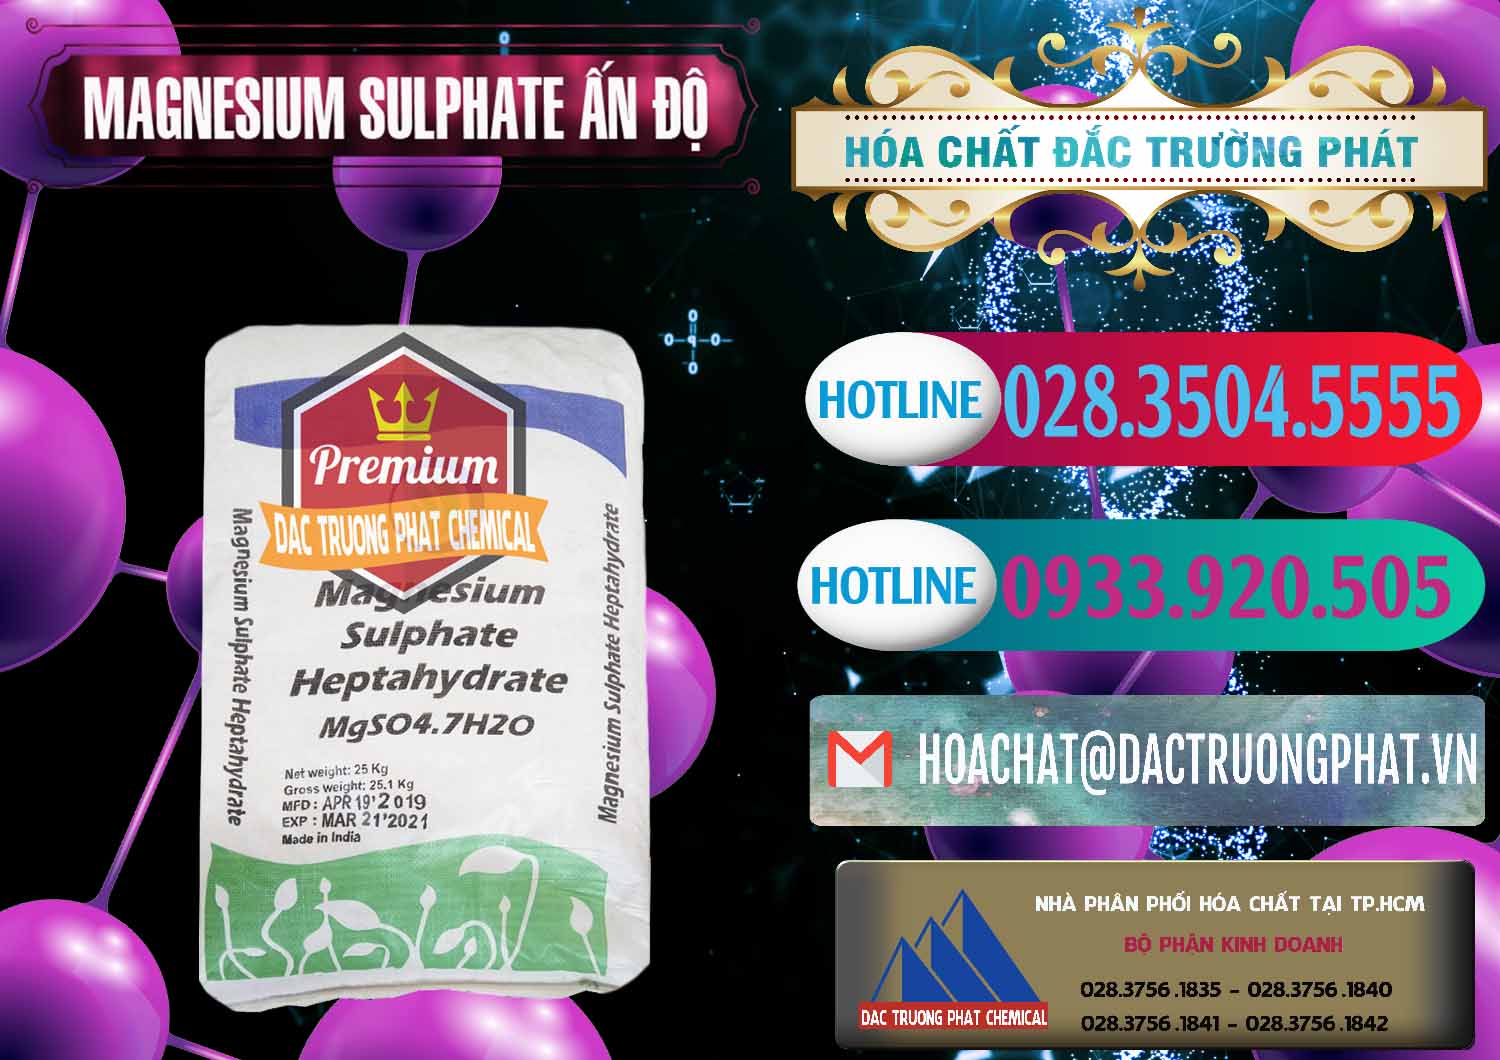 Phân phối & bán MGSO4.7H2O – Magnesium Sulphate Heptahydrate Ấn Độ India - 0362 - Cung cấp _ bán hóa chất tại TP.HCM - truongphat.vn